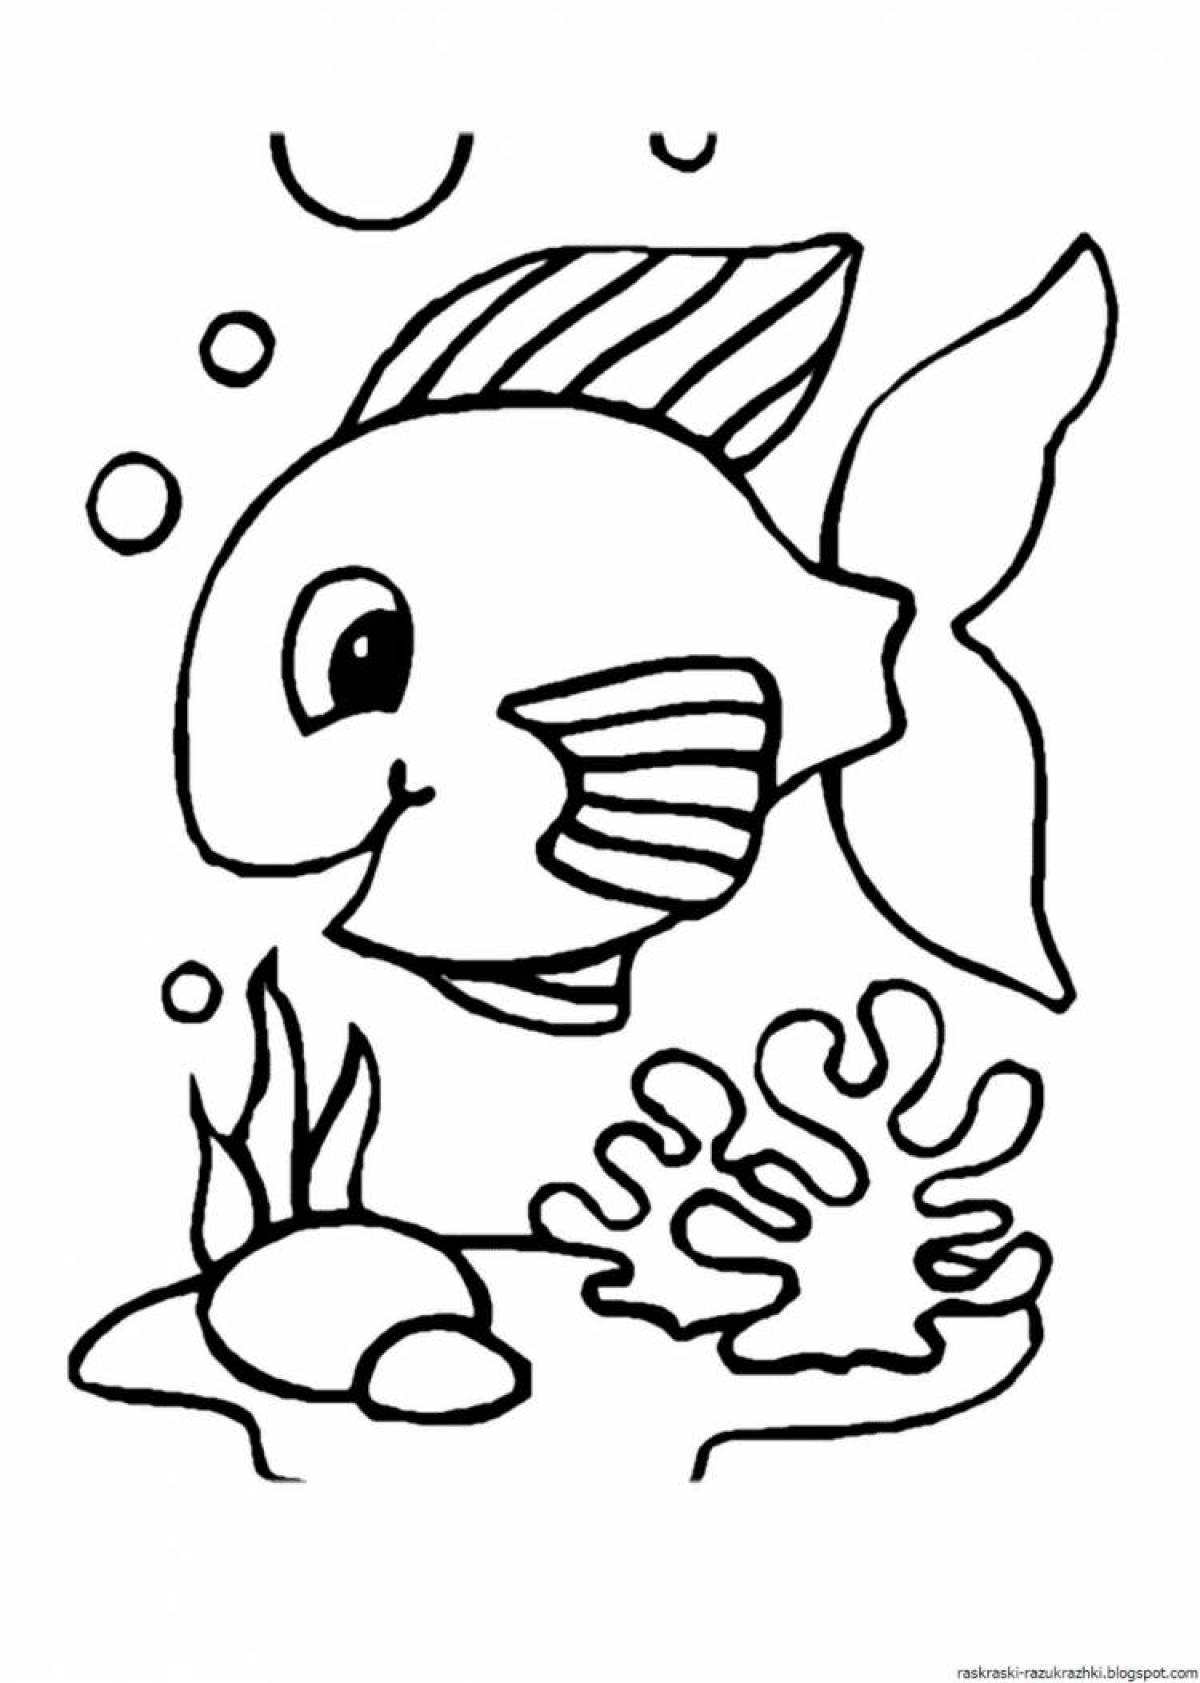 Веселая рыбка-раскраска для детей